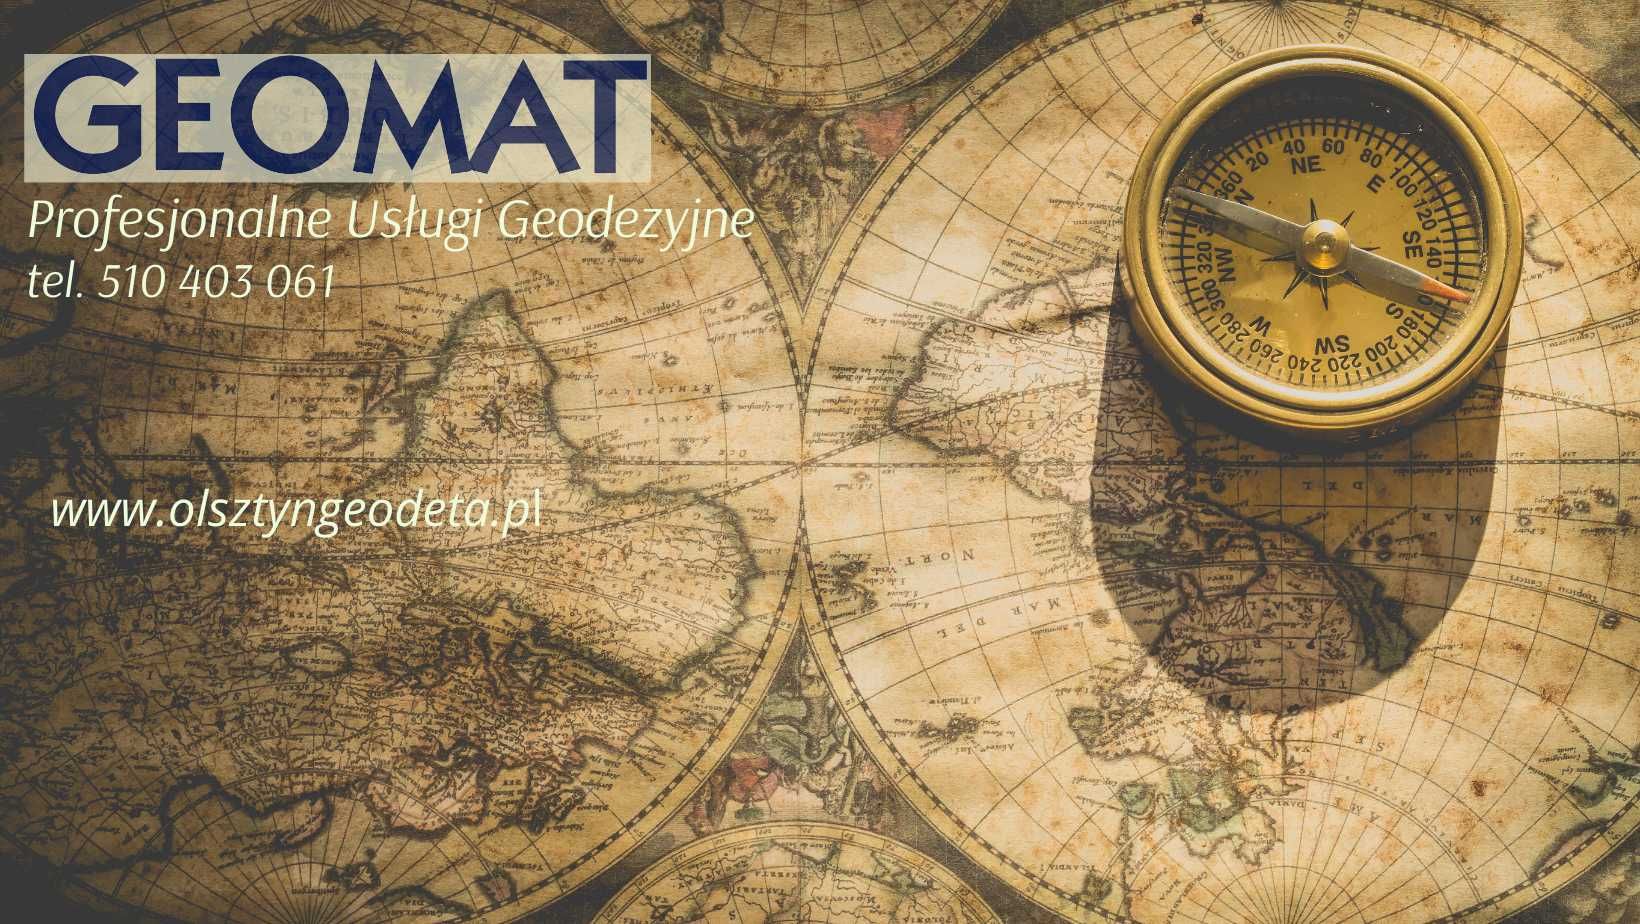 Geodeta Geodezja Usługi geodezyjne Mapy Olsztyn Warmińsko Mazurskie